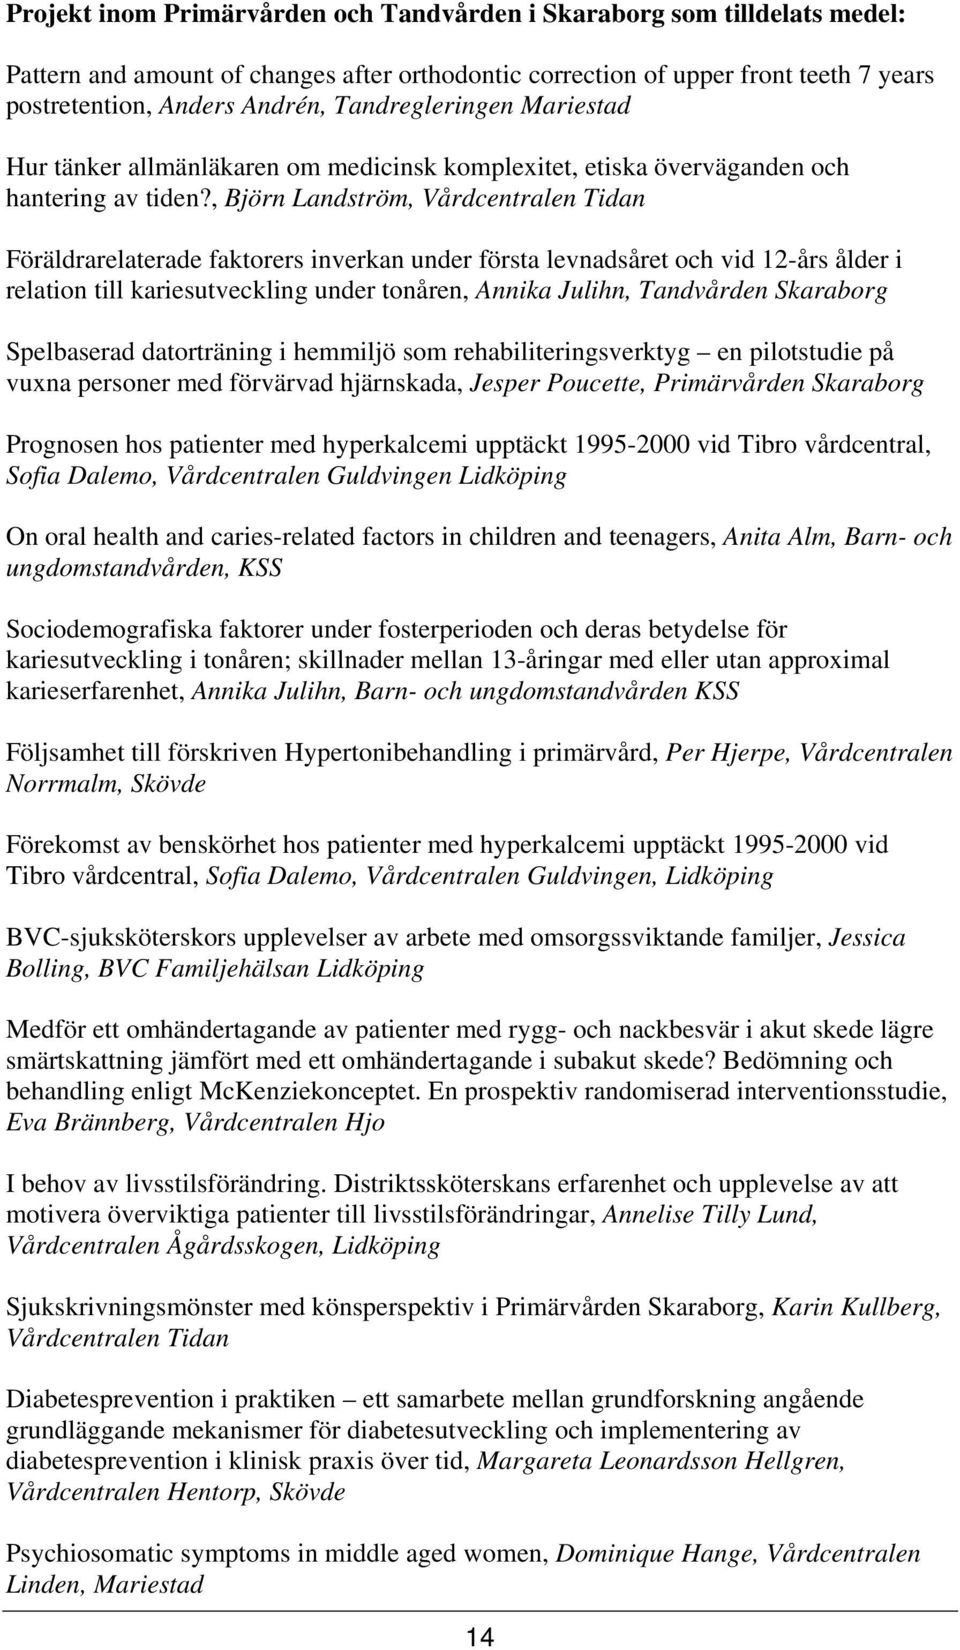 , Björn Landström, Vårdcentralen Tidan Föräldrarelaterade faktorers inverkan under första levnadsåret och vid 12-års ålder i relation till kariesutveckling under tonåren, Annika Julihn, Tandvården